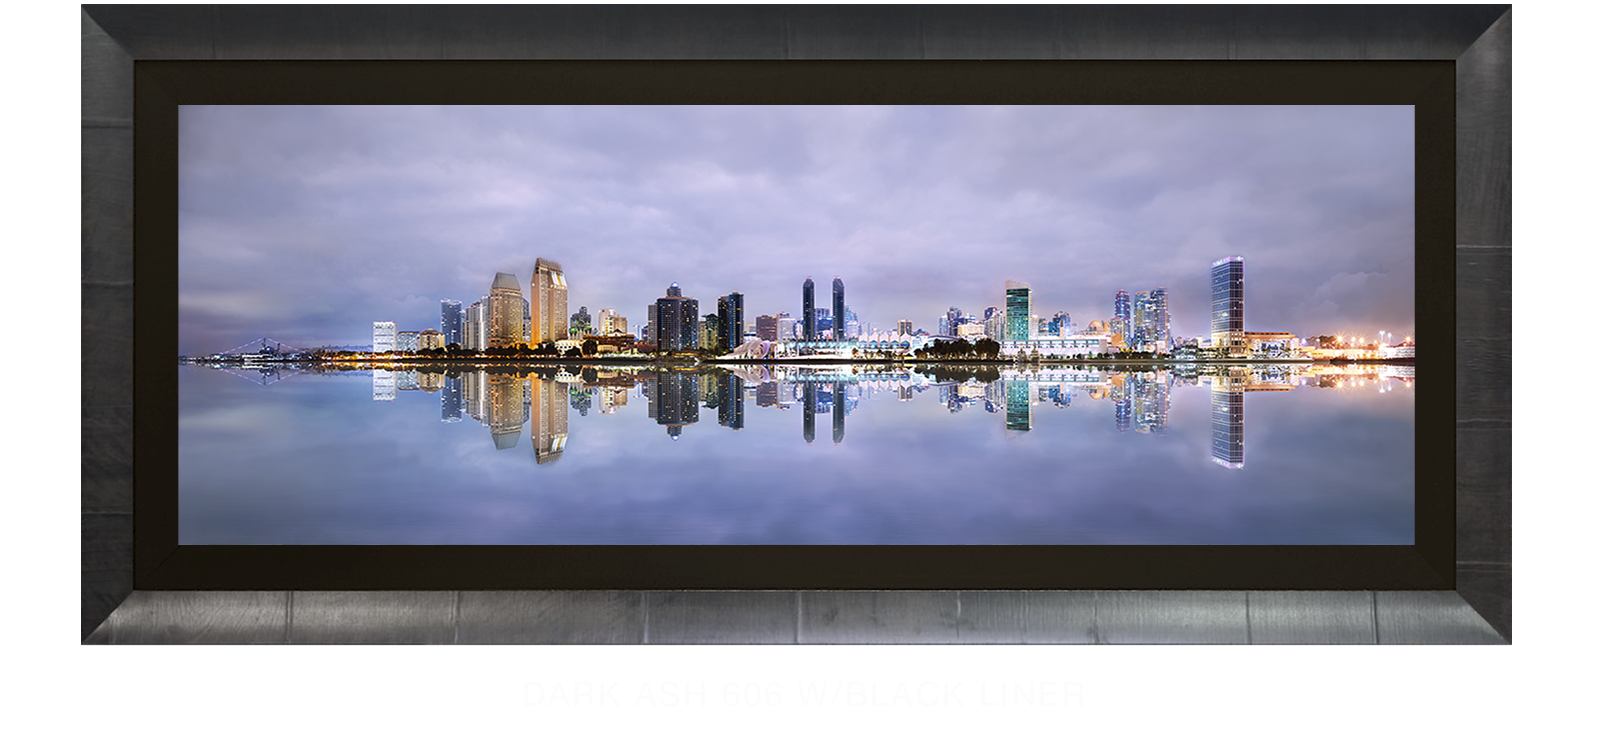 17INTERLUDE DIEGO Dark Ash 606 w_Blk Liner T